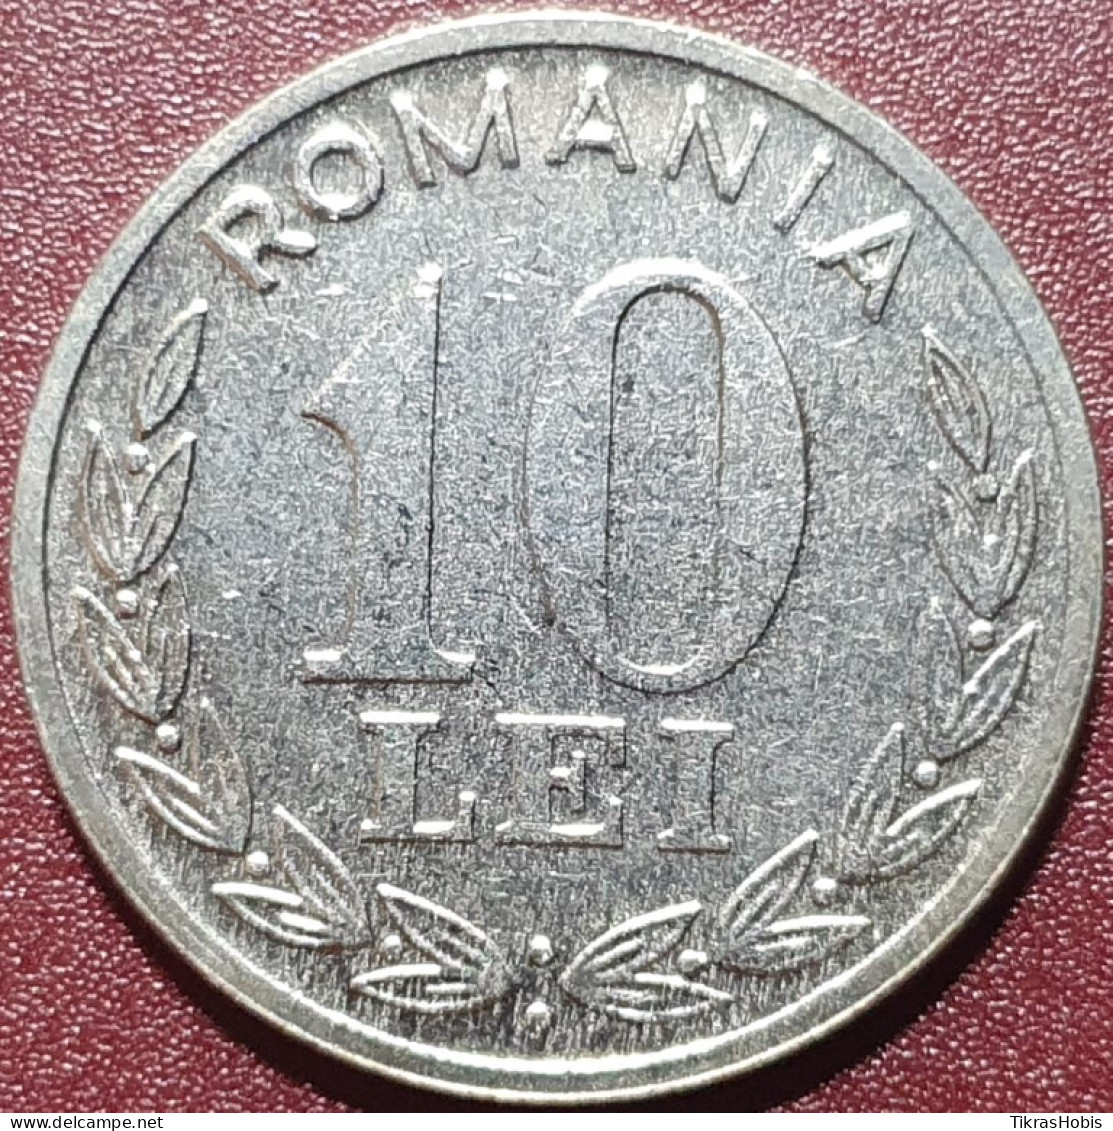 Romania 10 Leo, 1995 Km116 - Roumanie